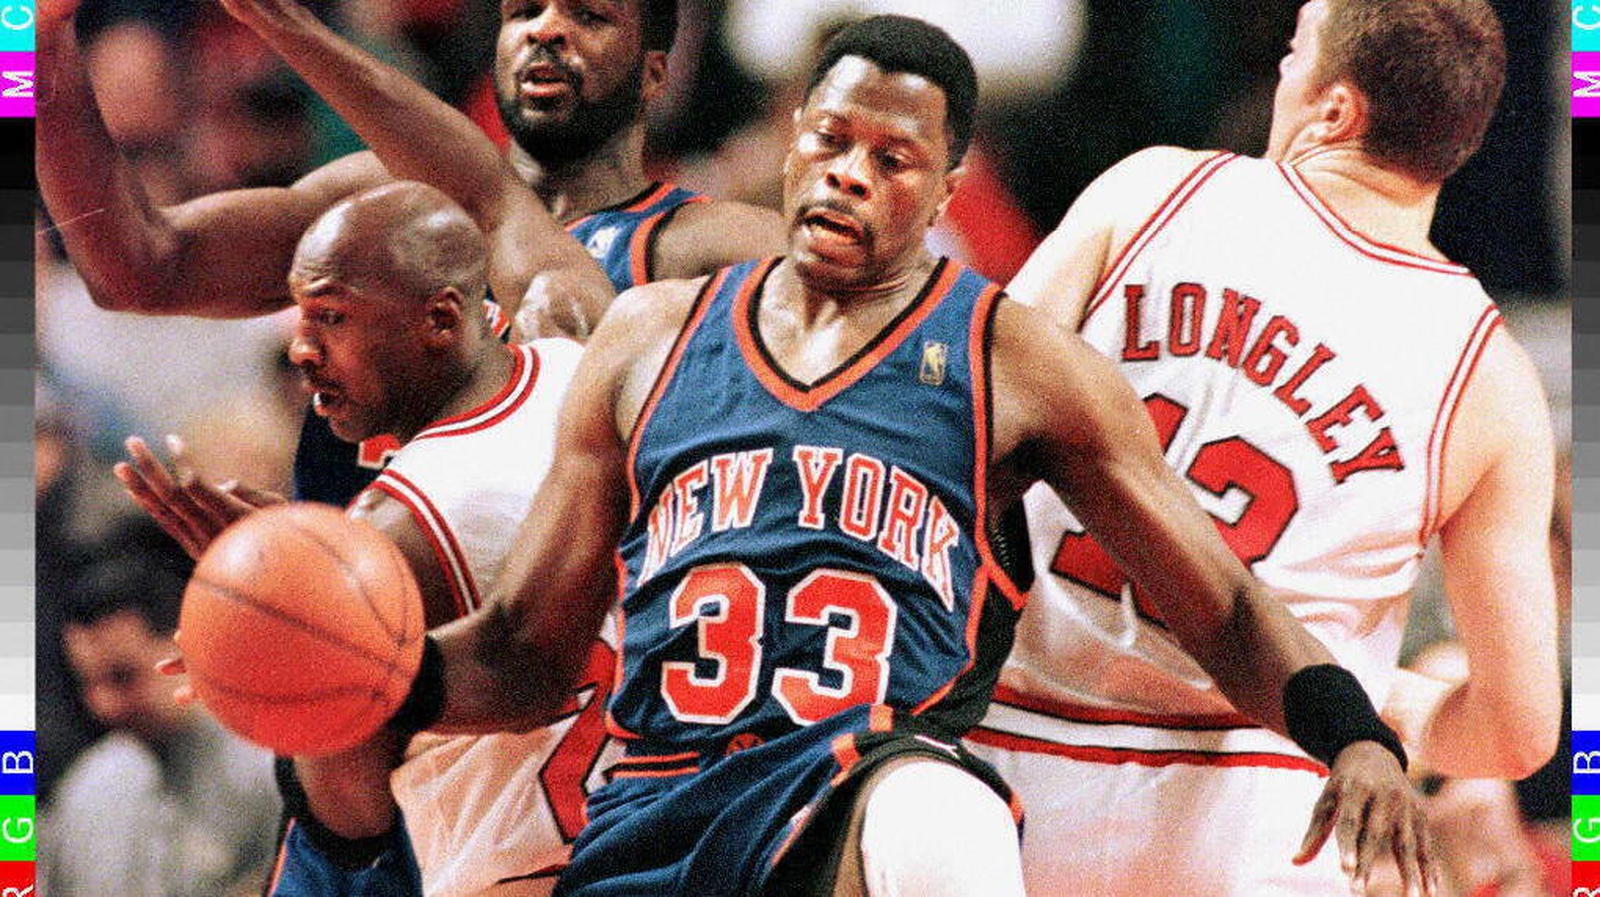 Michael Jordan encouraged Patrick Ewing to get into coaching